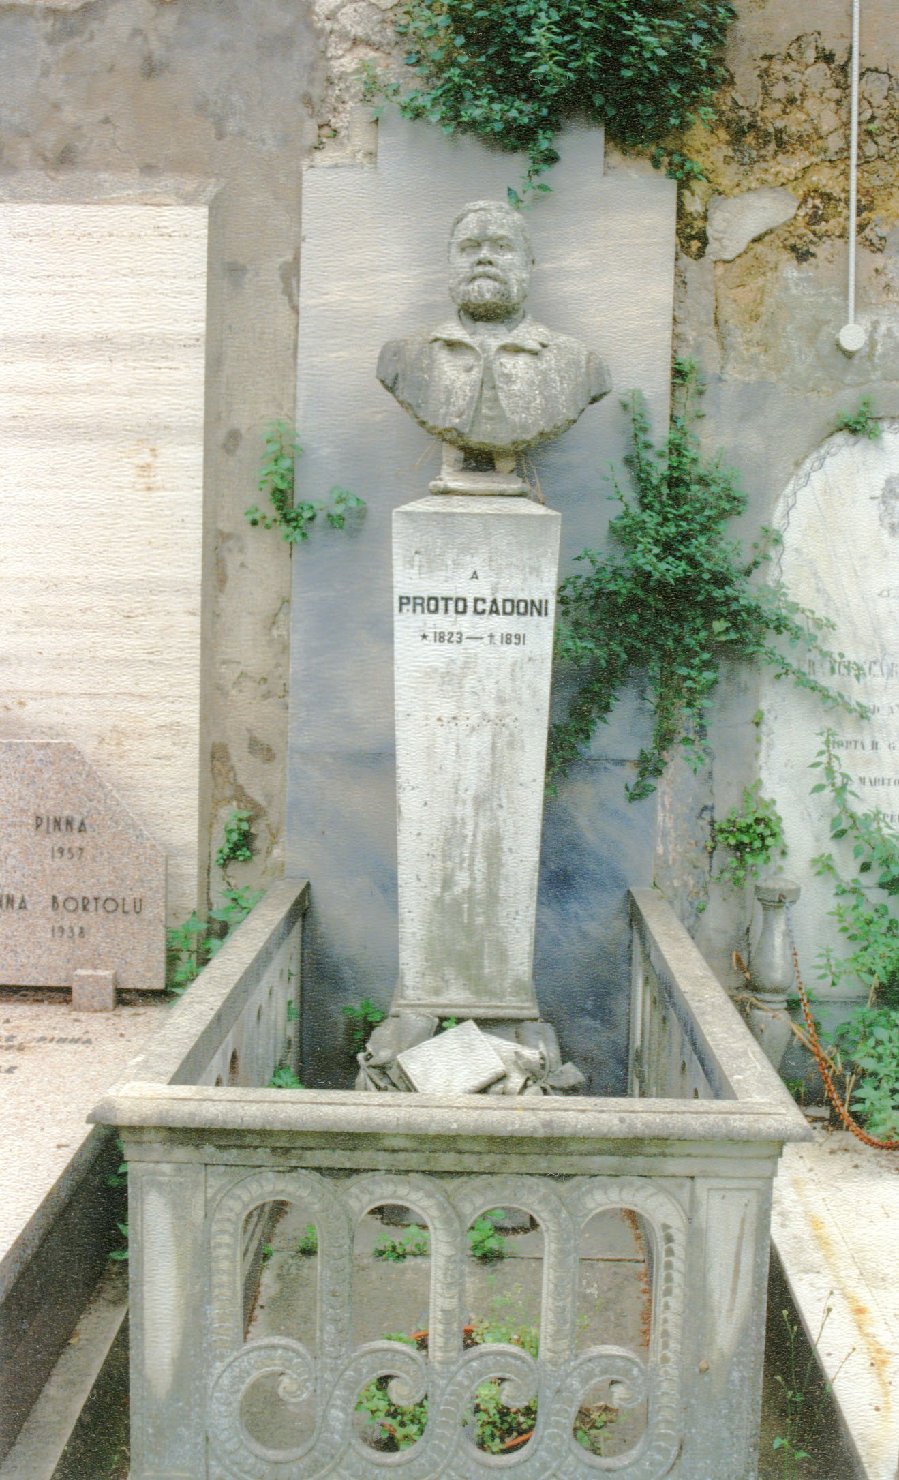 Ritratto di proto cadoni, busto ritratto d'uomo (monumento funebre)